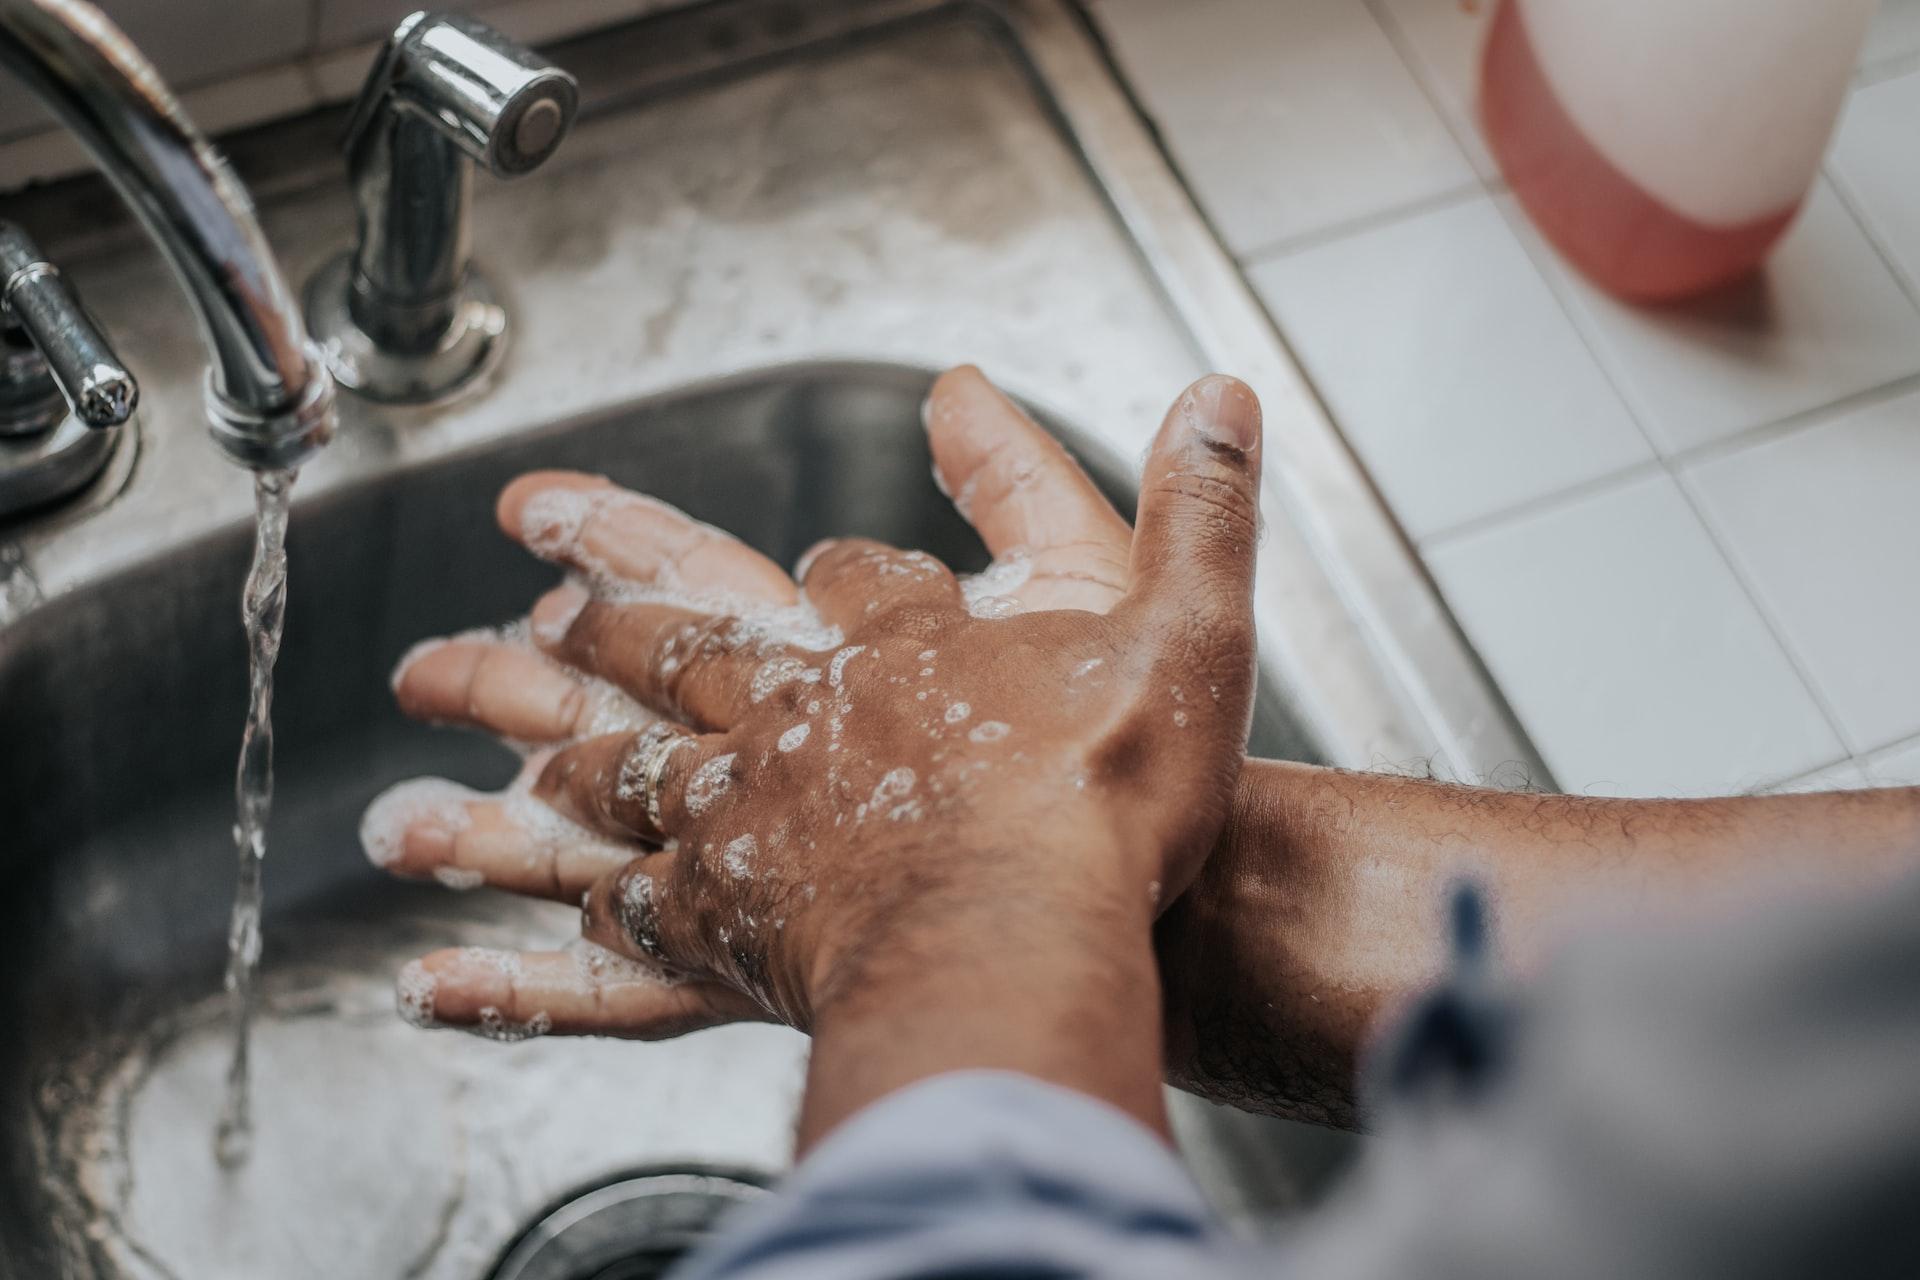 A higiene pessoal básica é um método eficaz para evitar a ocorrência de diarreia. (Fonte: Mélissa Jeanty/Unsplash/Reprodução)